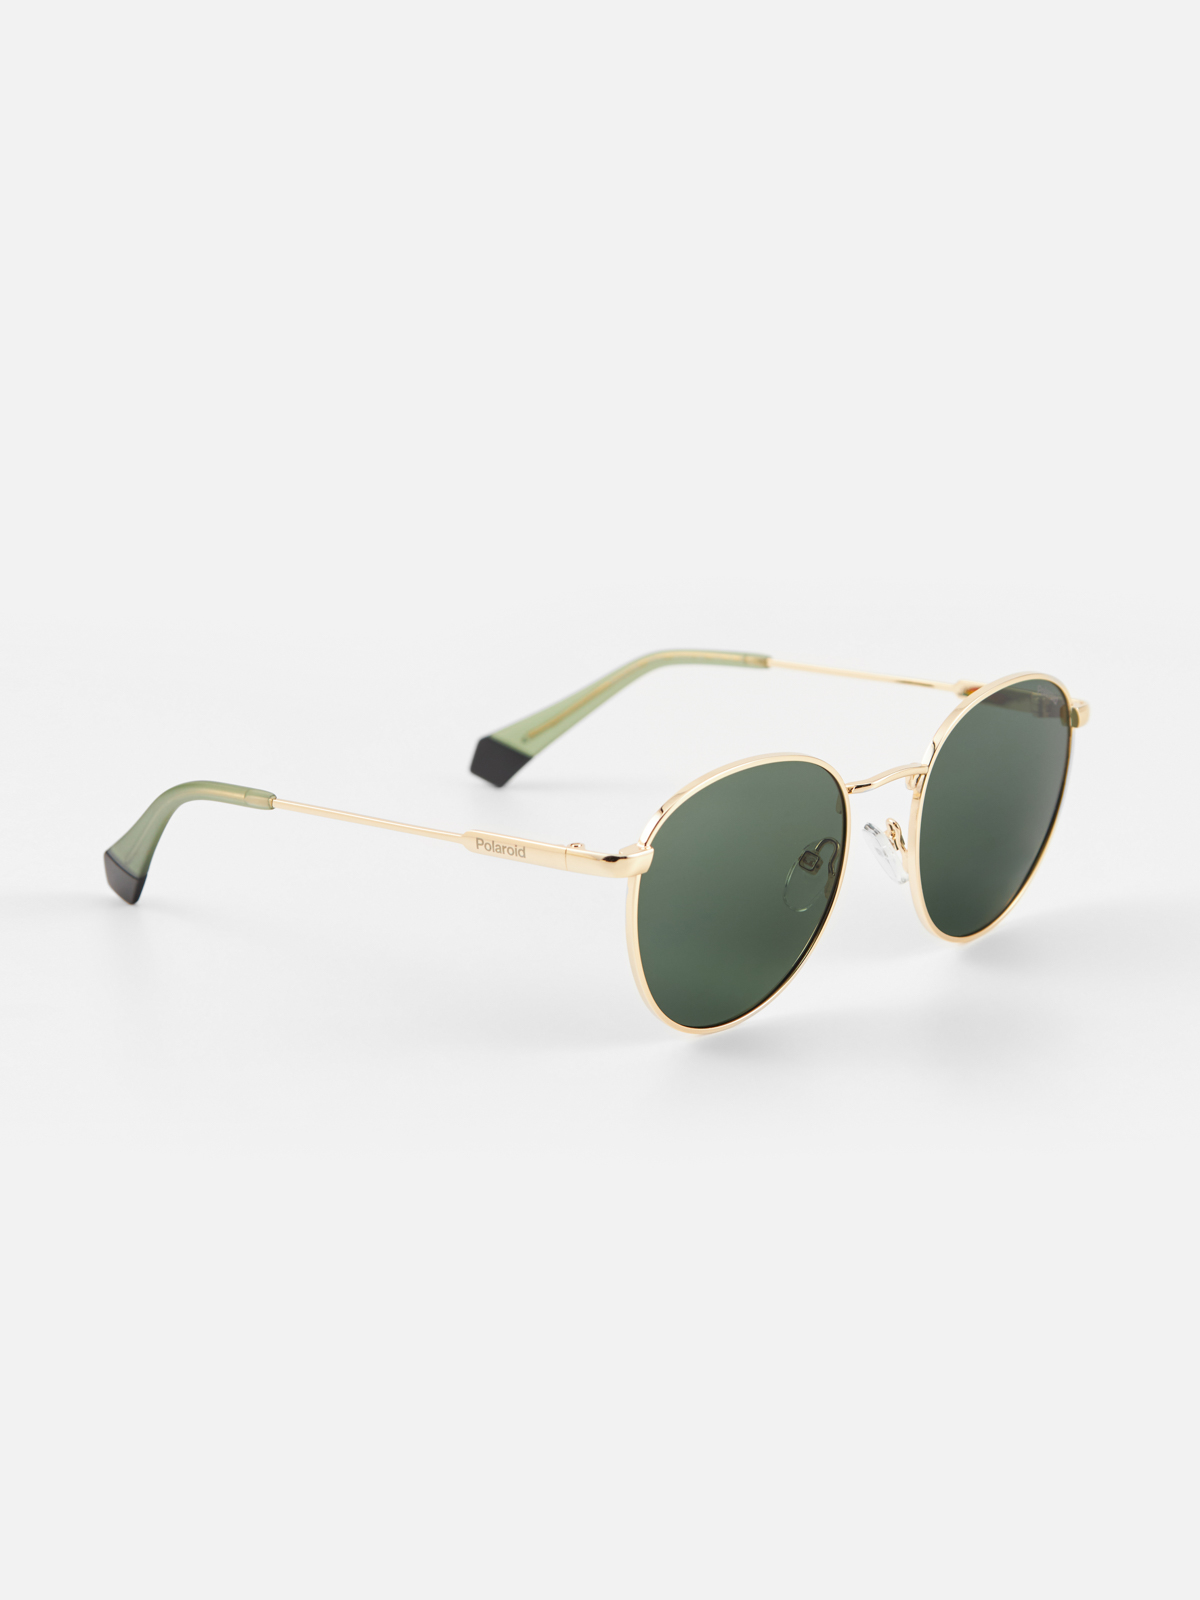 Солнцезащитные очки унисекс Polaroid PLD 6171/S зеленые